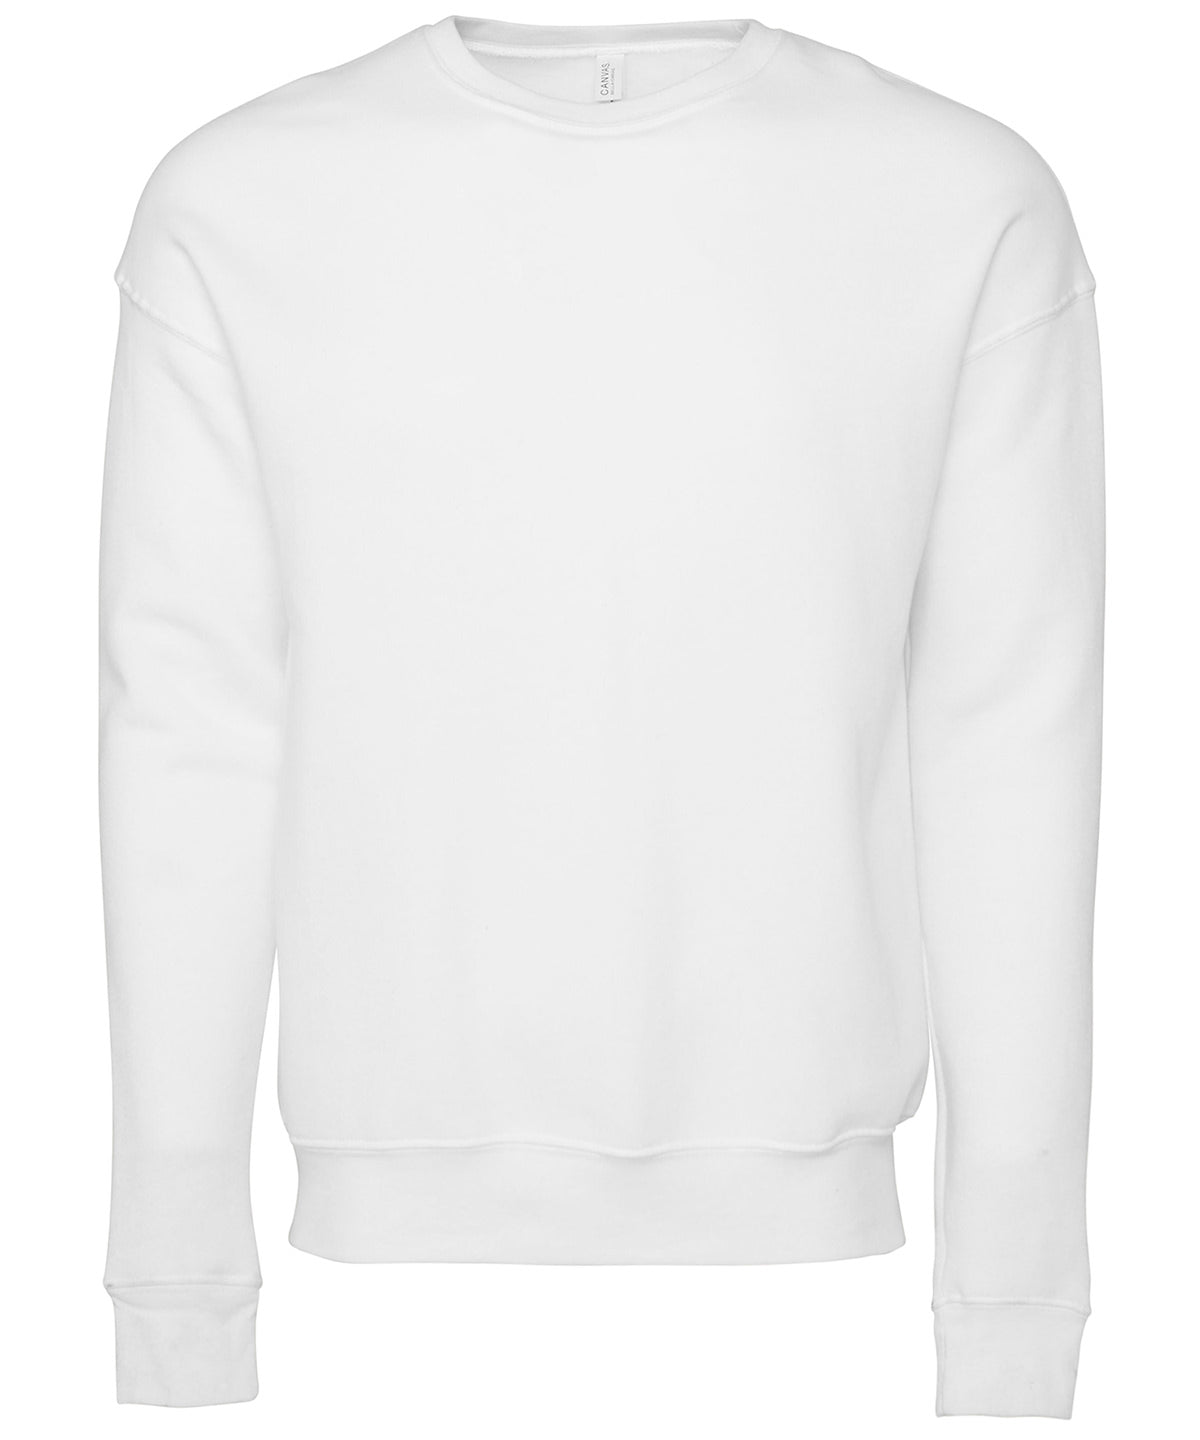 Personalised Sweatshirts - Heather Grey Bella Canvas Unisex drop shoulder fleece